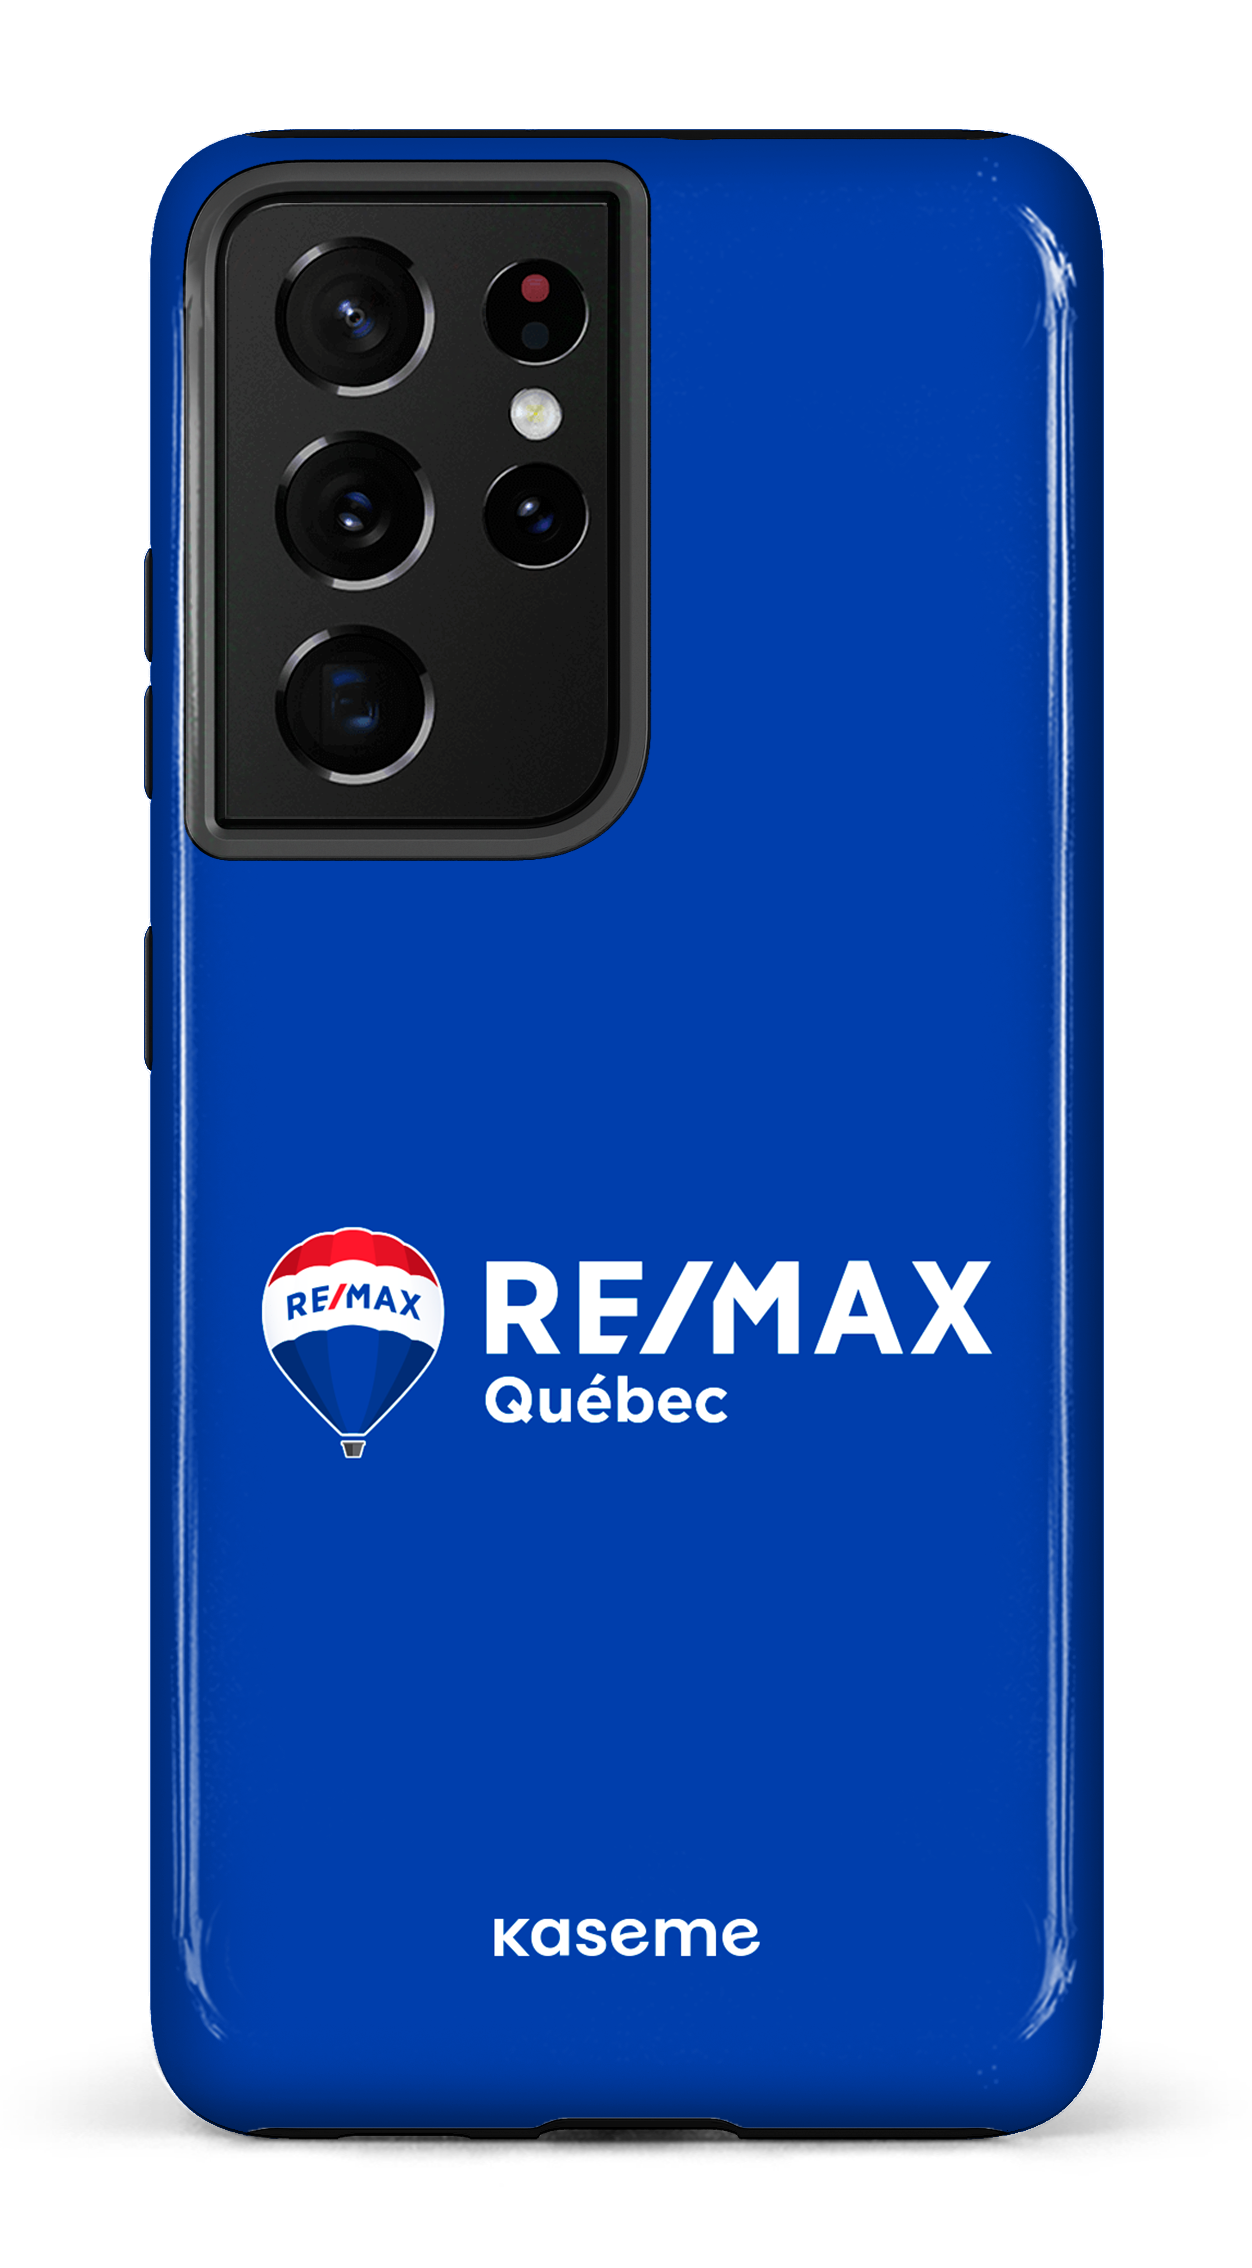 Remax Québec Bleu - Galaxy S21 Ultra